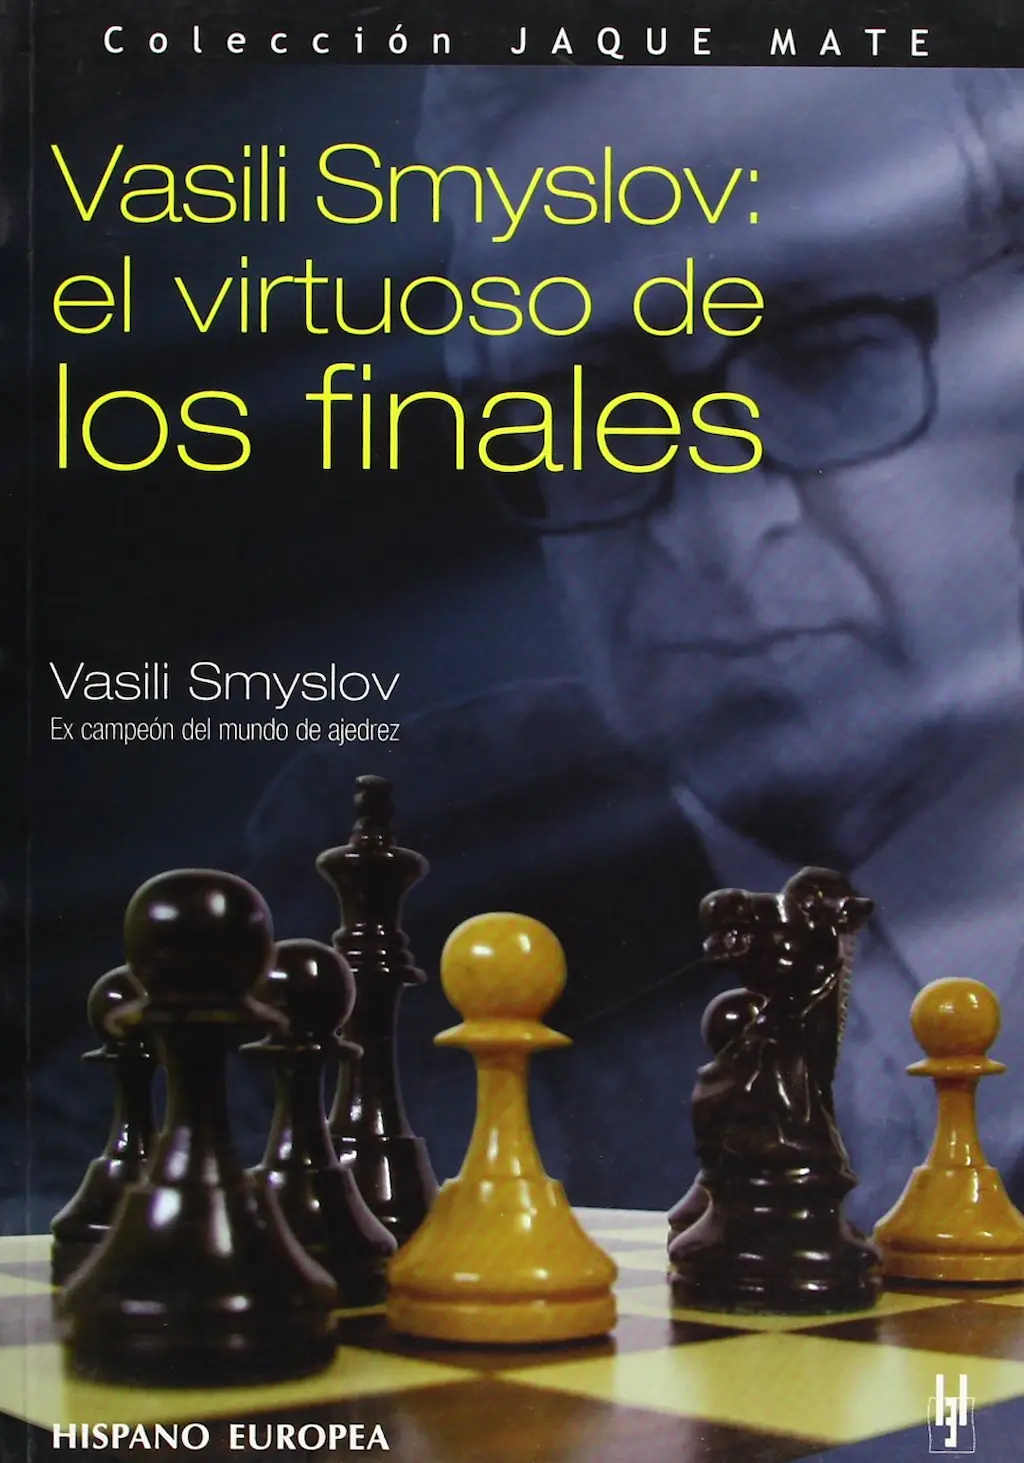 Vasili Smyslov: el virtuoso de los finales